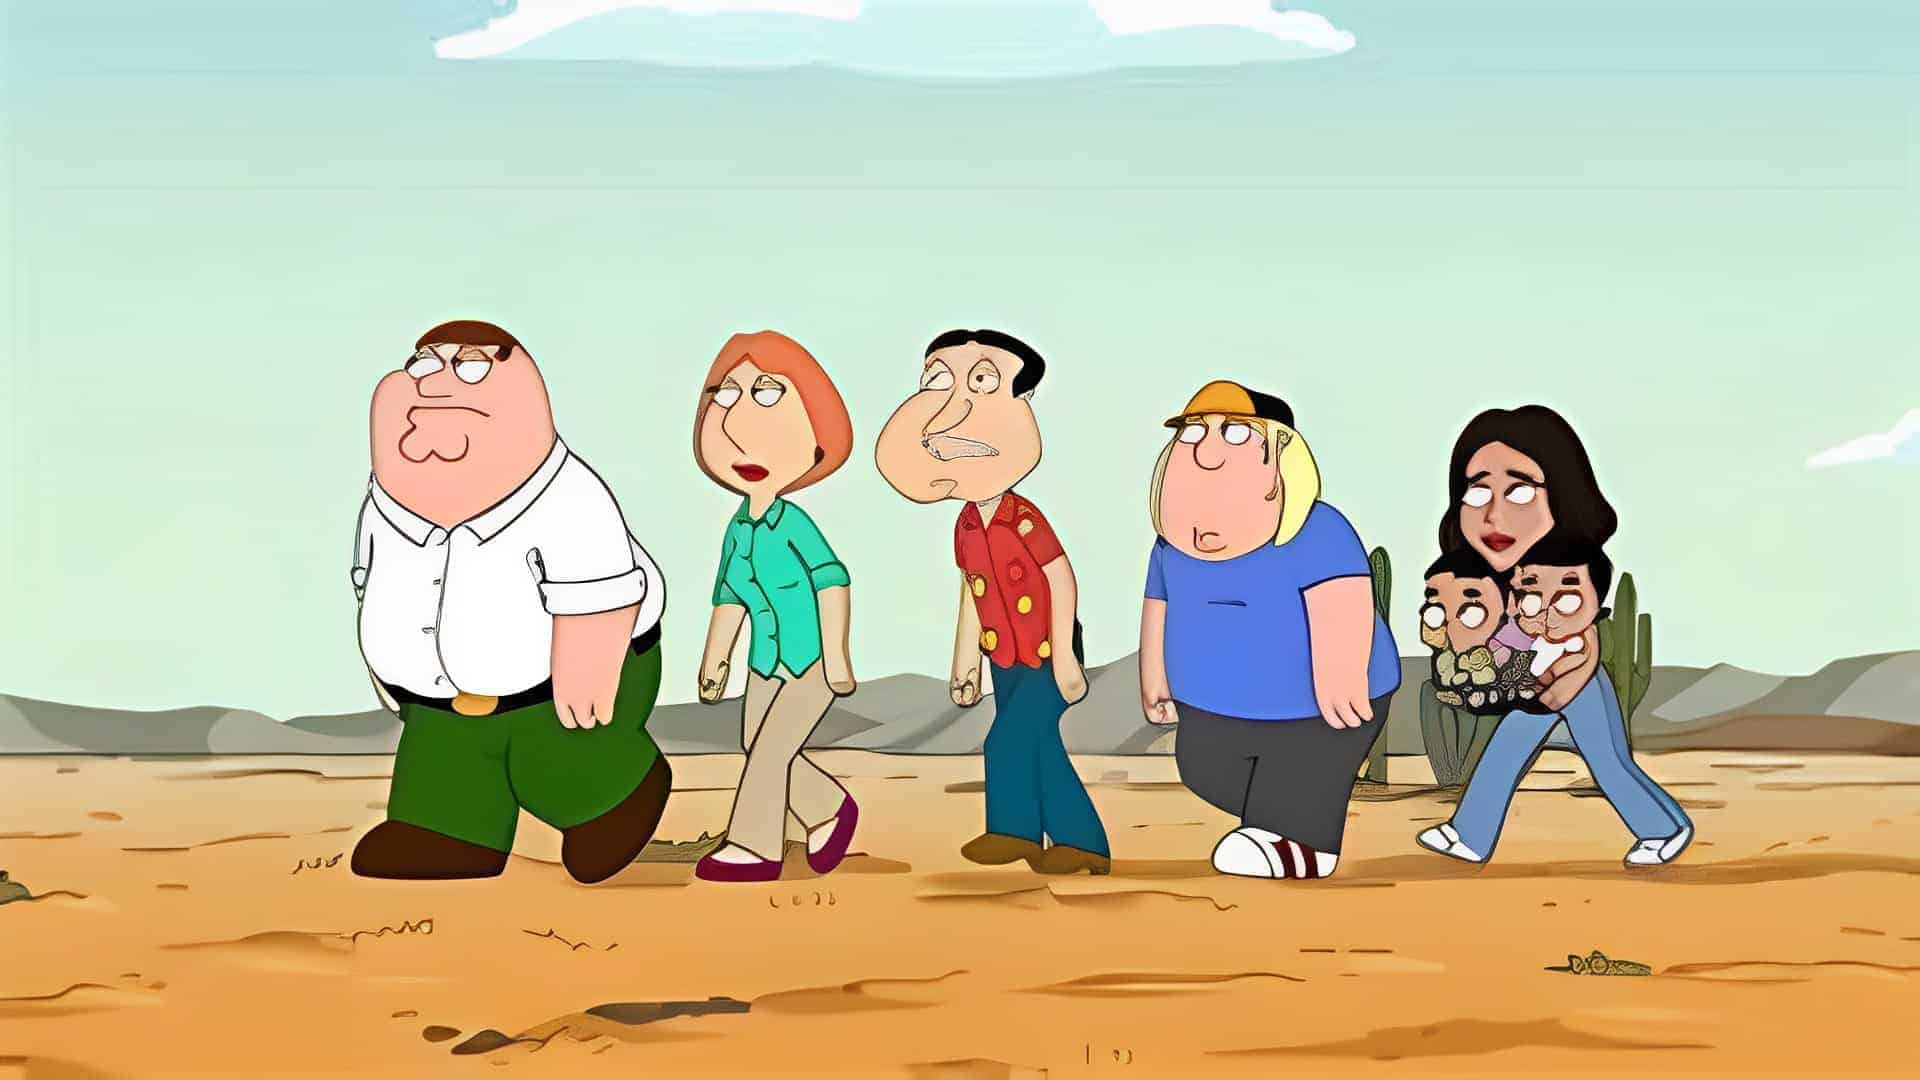 Family Guy Season 21 Episode 13 recap